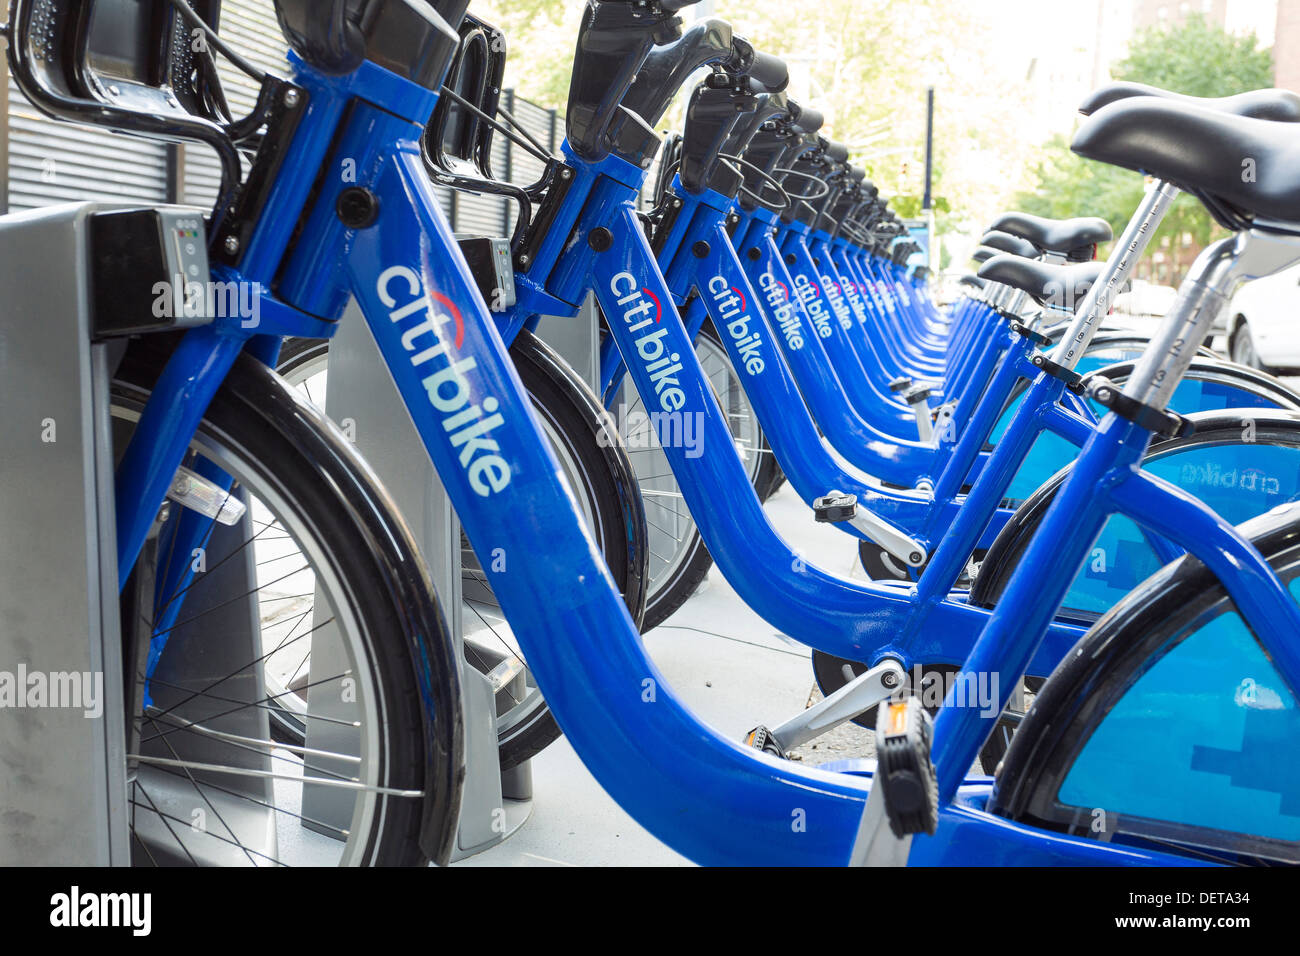 Prêt de bicyclettes publiques Citi, le système de partage de la ville de New York Banque D'Images